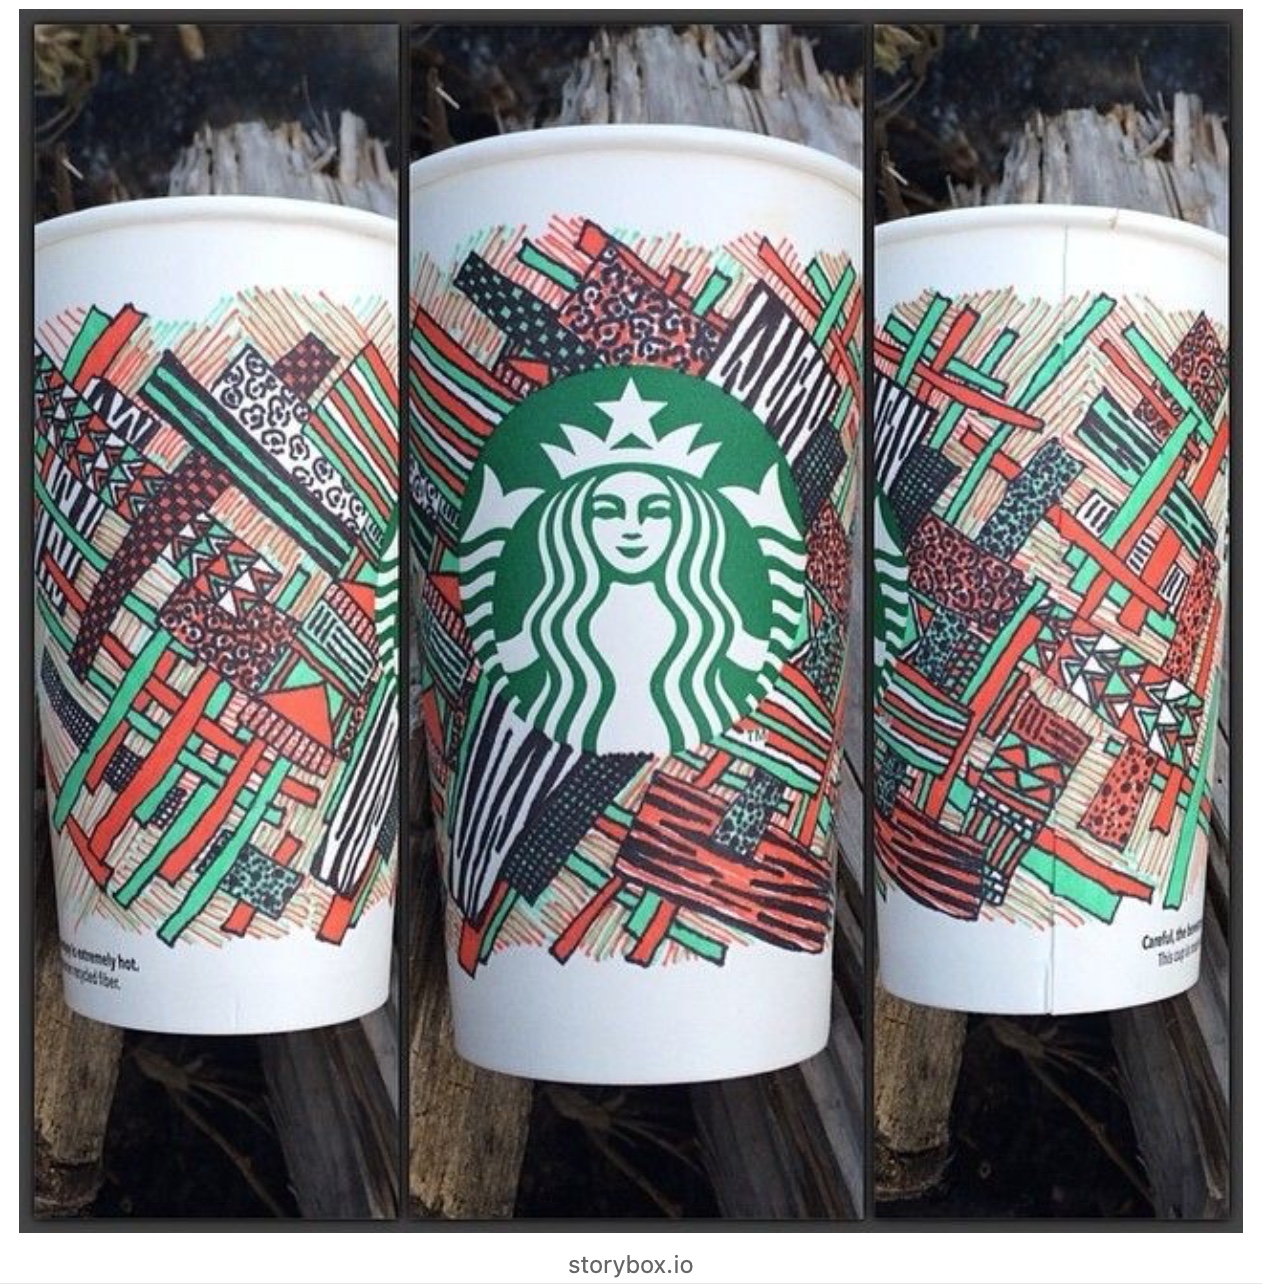 UGC – Starbucks Becher bemalt